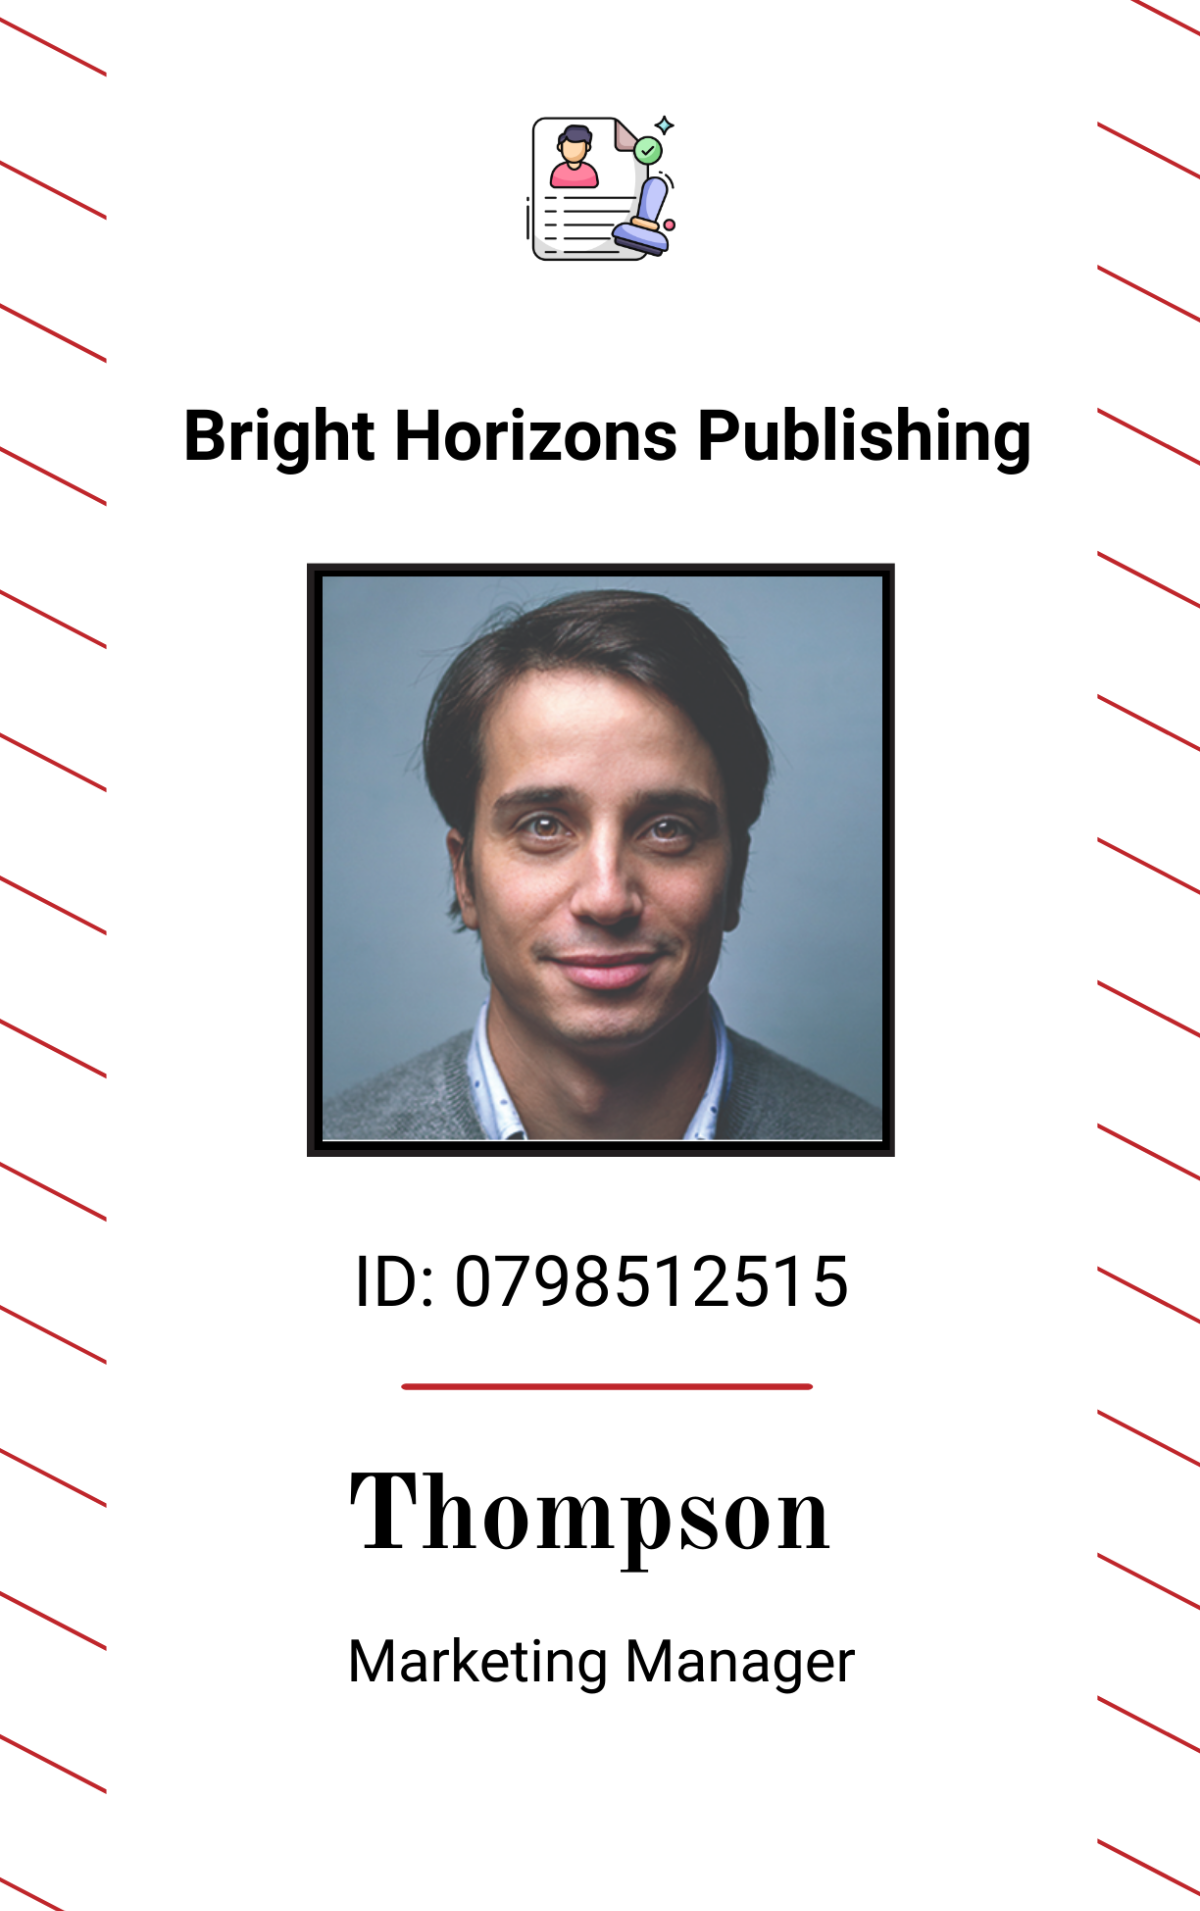 Author ID Card